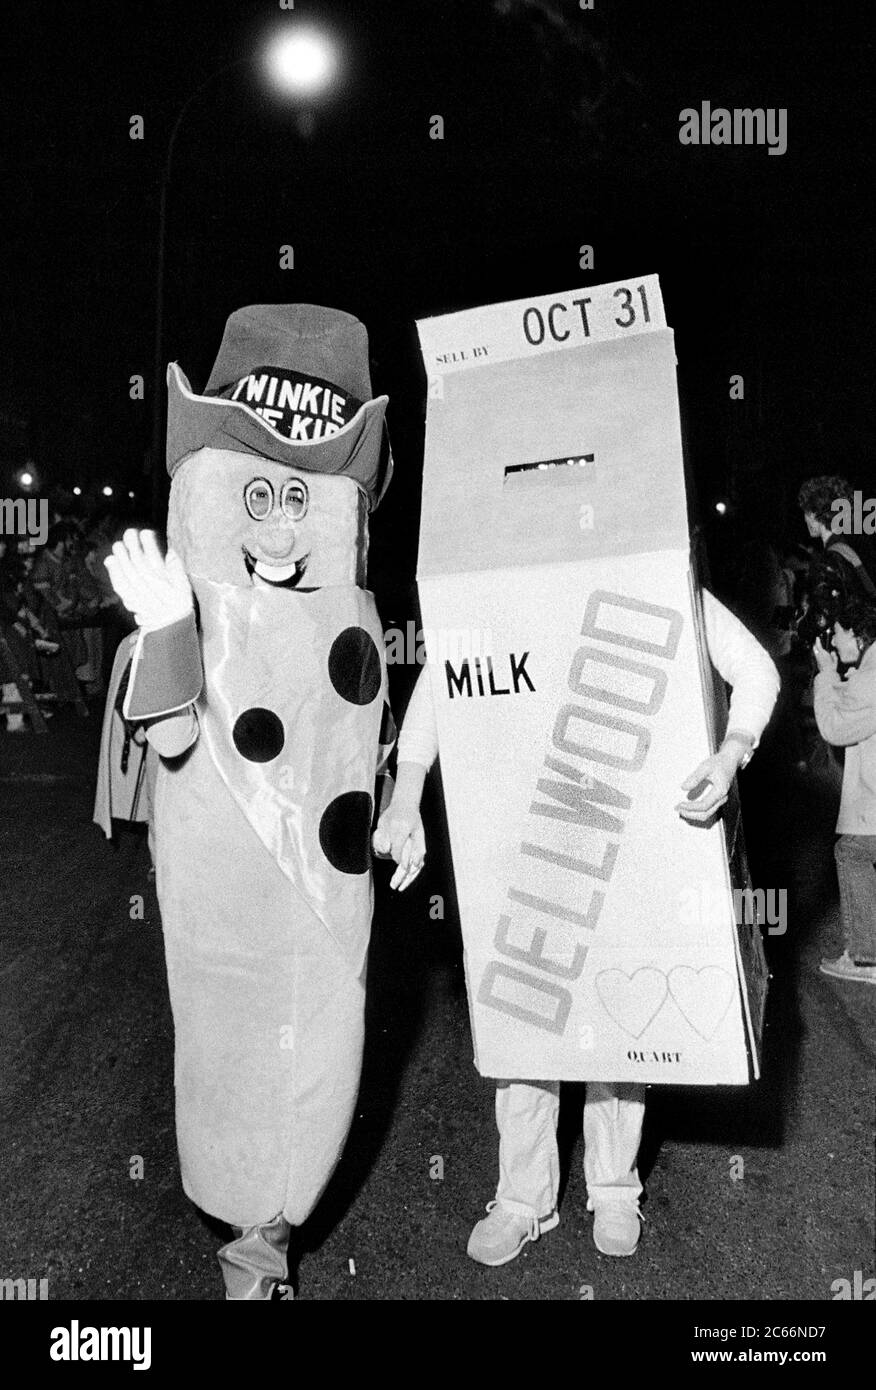 Lattiera e Twinkie alla Greenwich Village Halloween Parade, New York City, USA negli anni '80 fotografati con film in bianco e nero di notte. Foto Stock